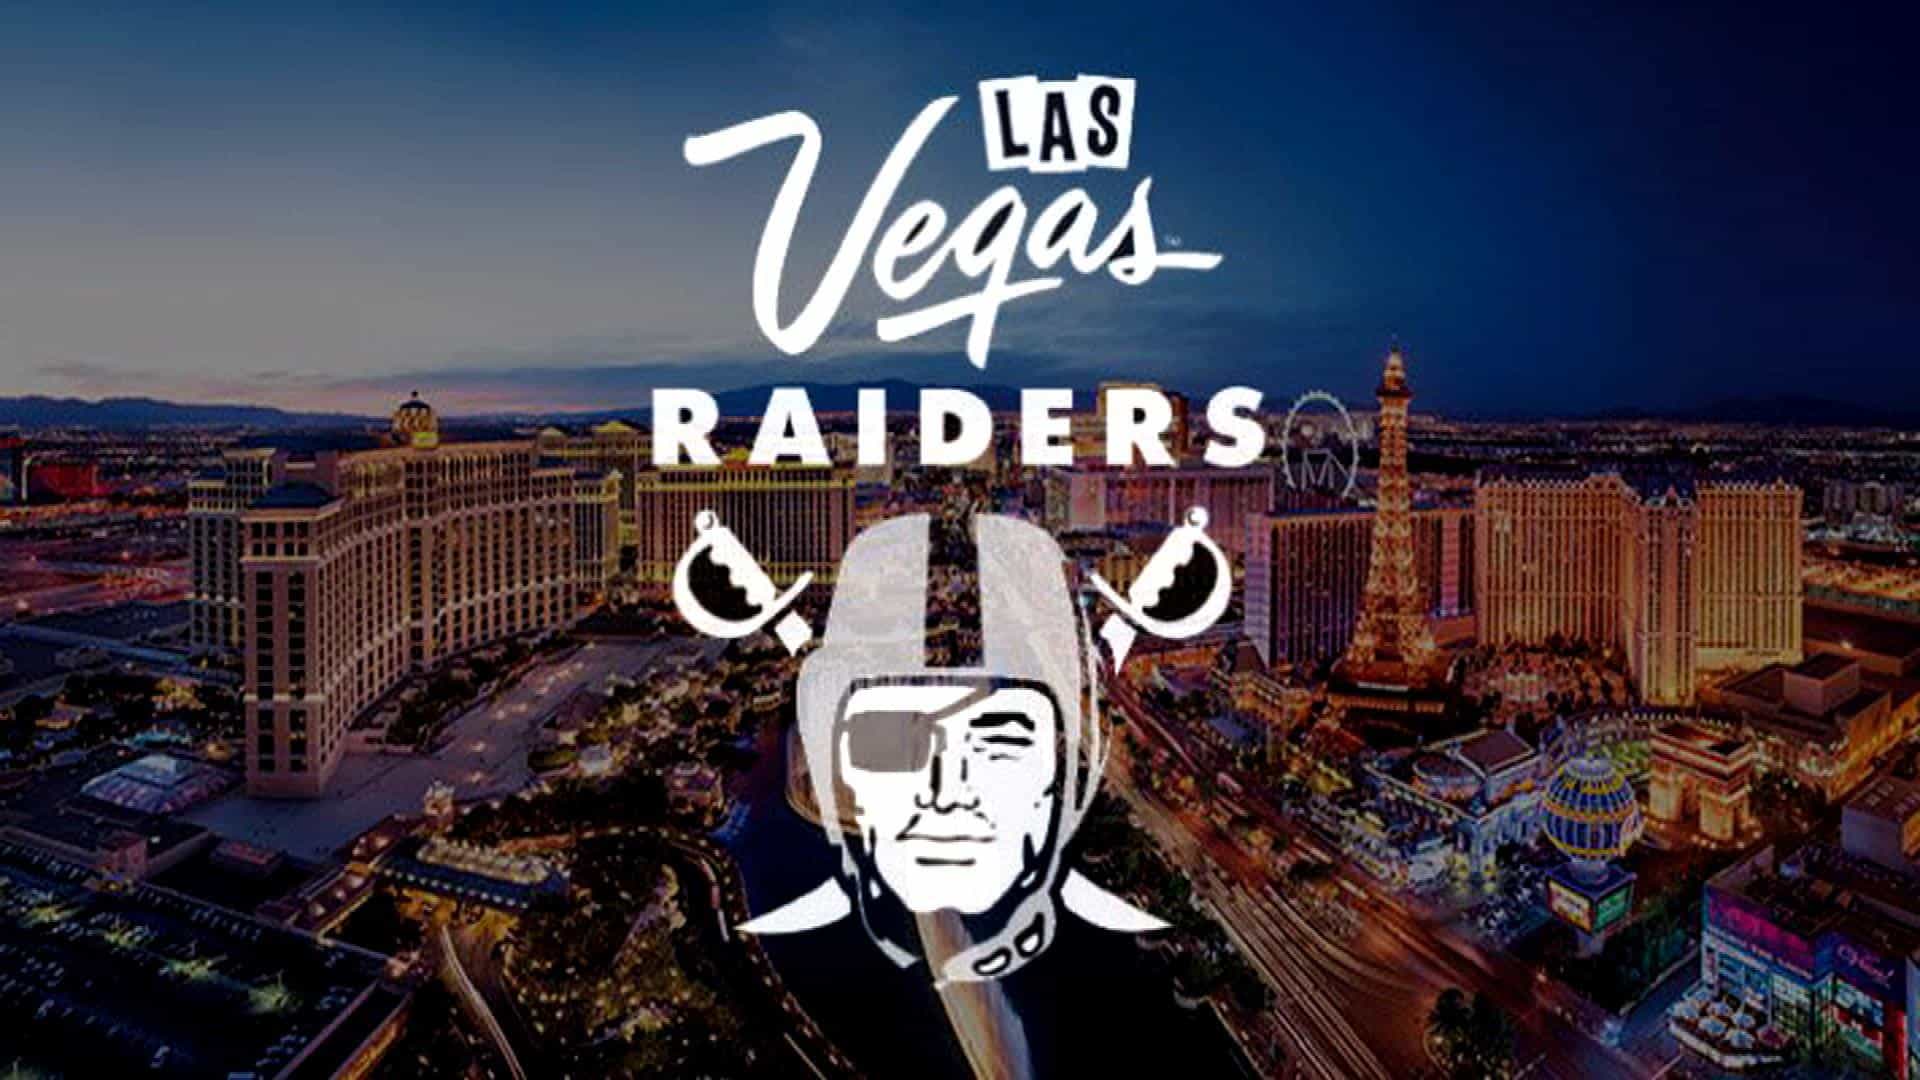 Las Vegas Raiders Schedule 2020 - HD Wallpaper 